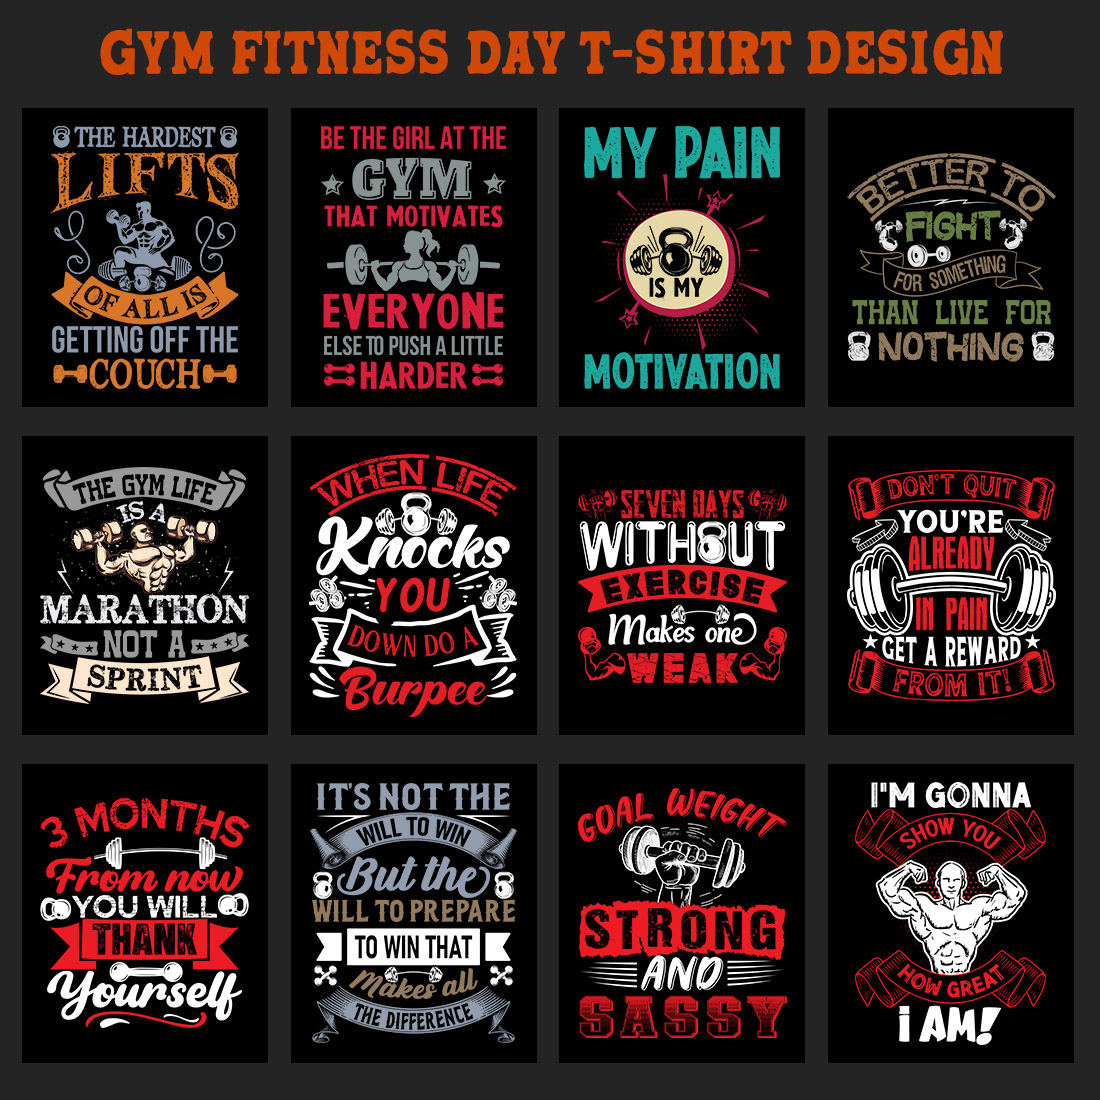 Gym Fitness T Shirt Design Bundle V 2 cover image.